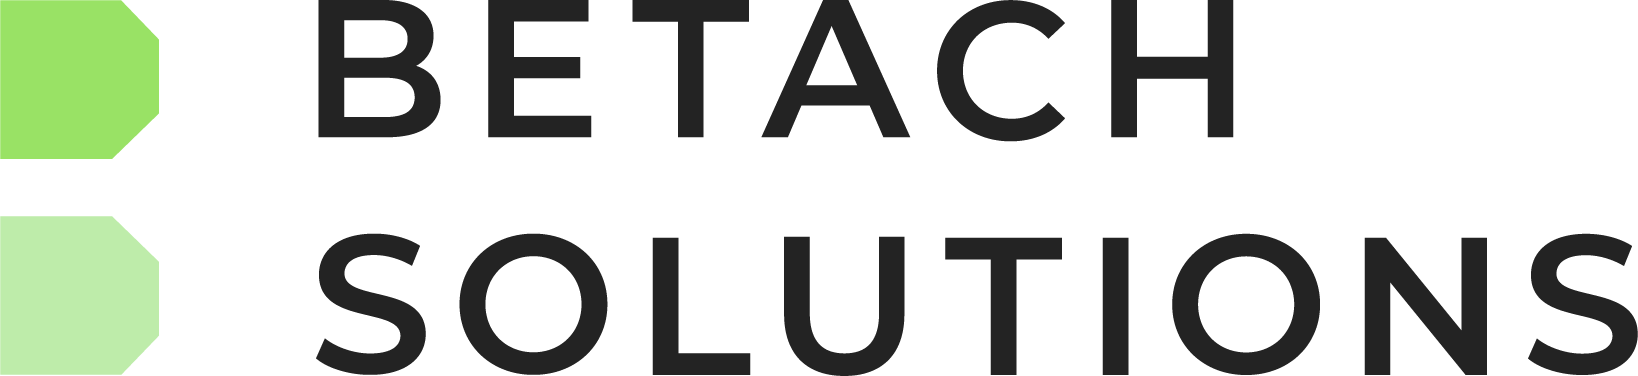 Betach Logo